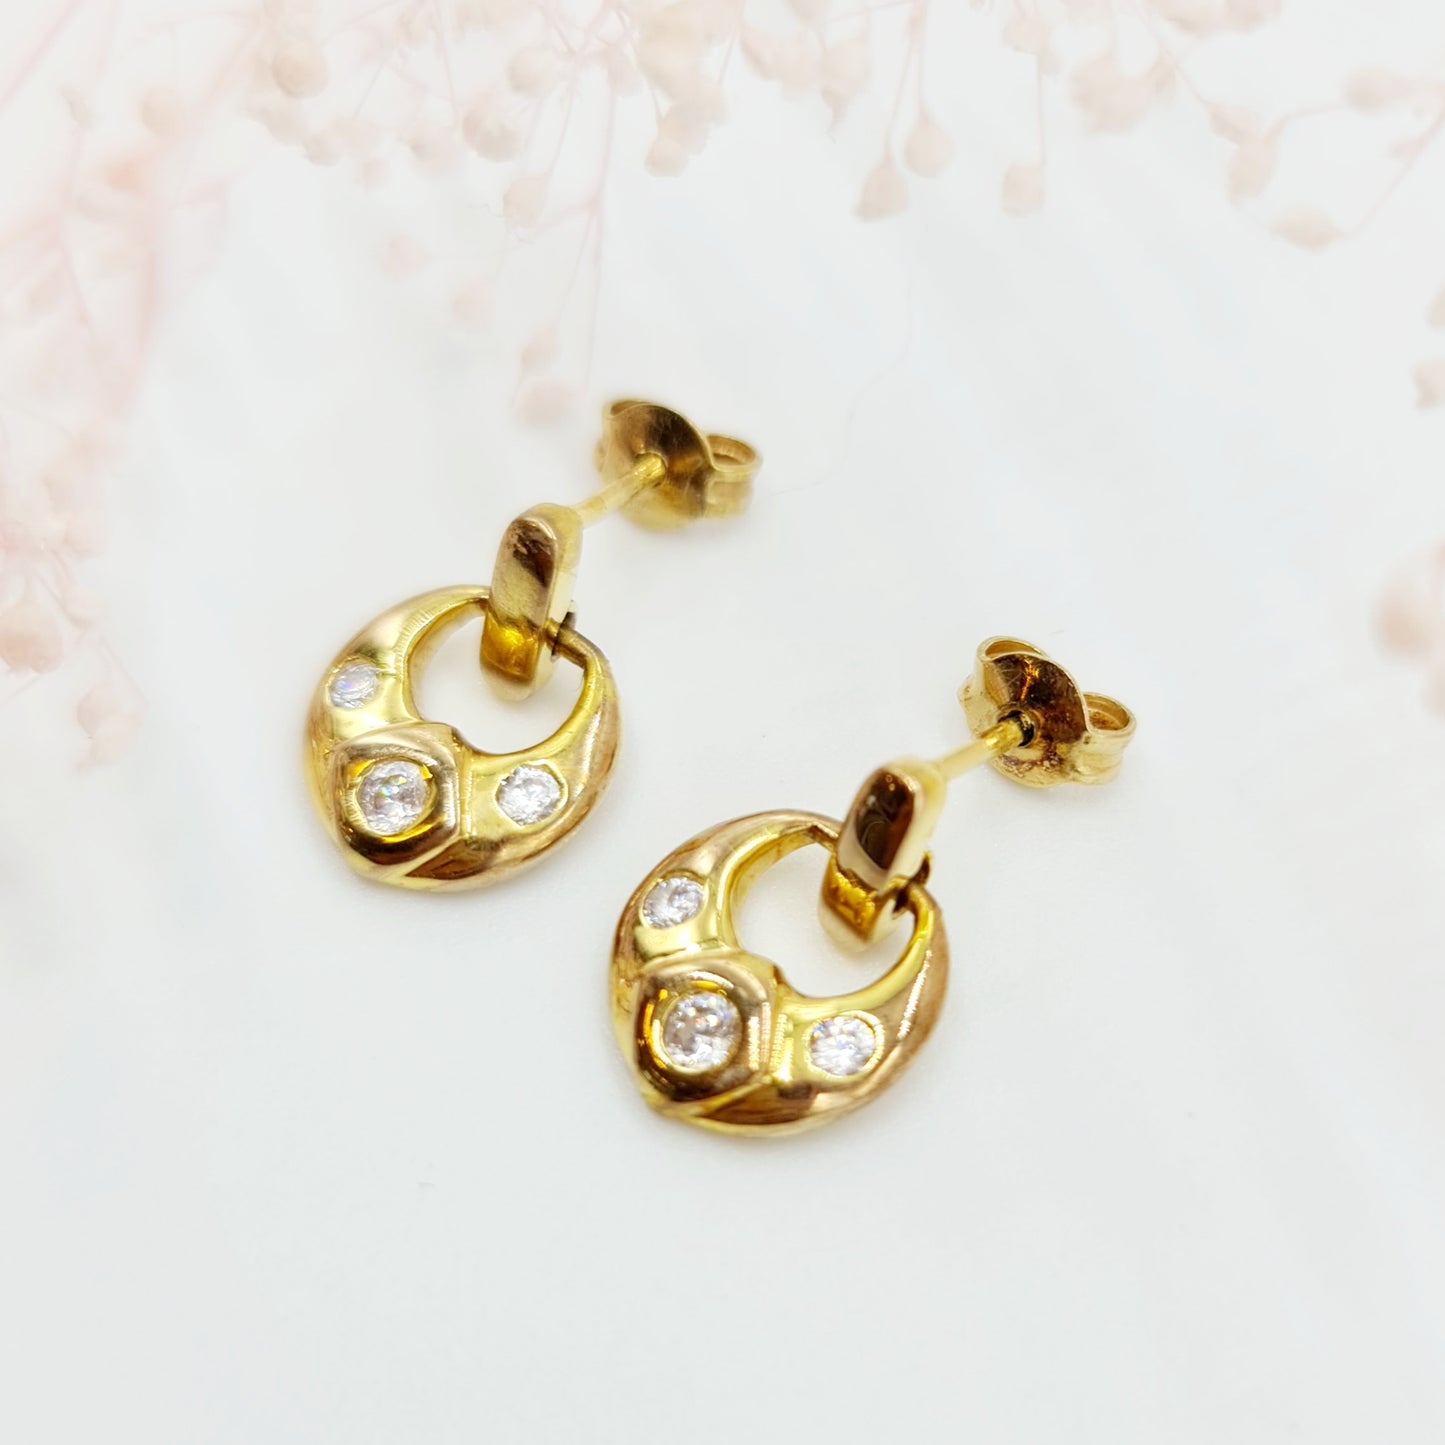 Vintage Ohrringe aus 333 Gelbgold mit 3 Zirkonia-Steinen, Elegante Retro-Schönheit